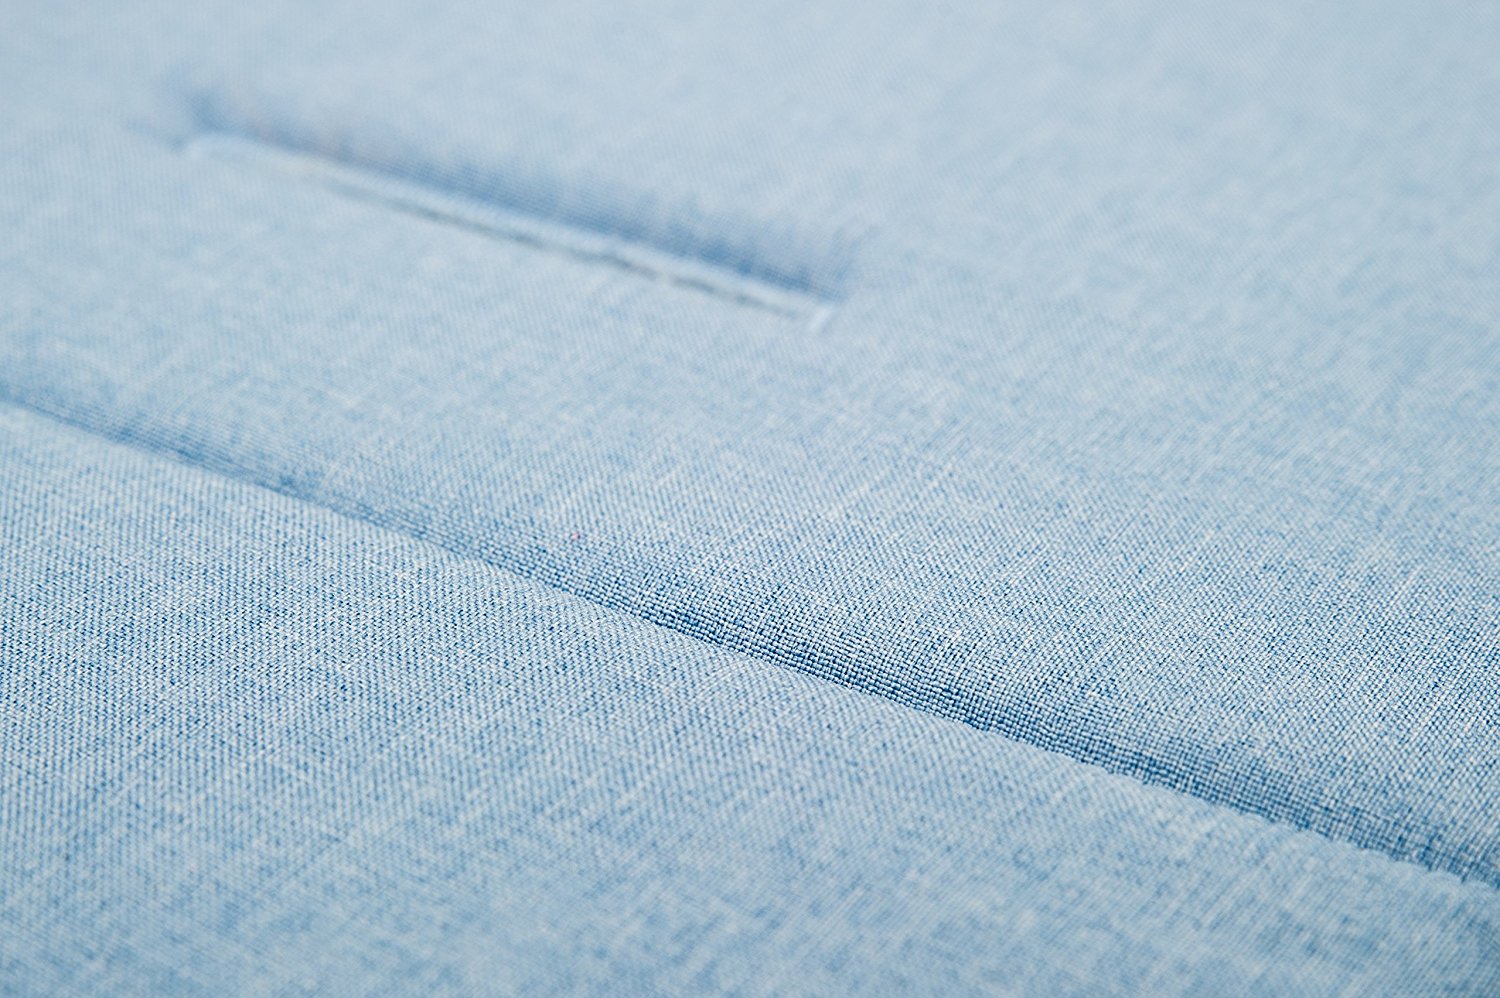 Матрасик вкладыш из ткани Lifeline Polyester с покрытием 3D Mesh, размер 83 x 42 см., цвет светло-синий  